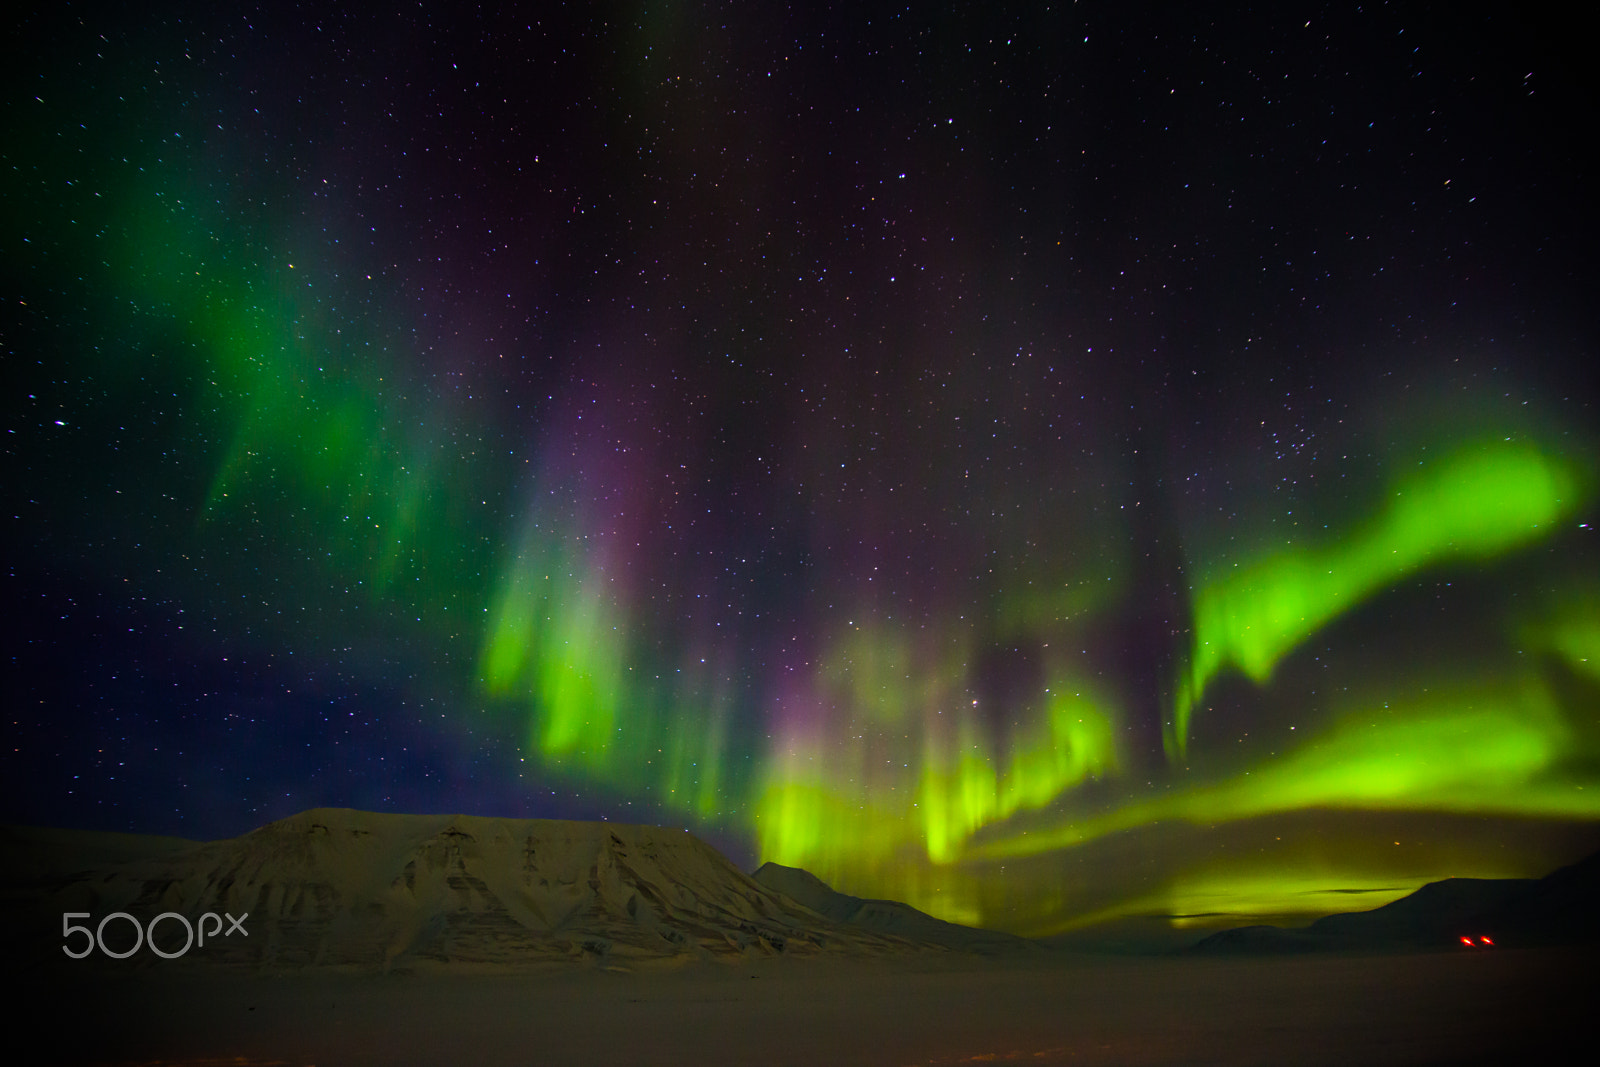 Canon EOS 6D sample photo. Aurora borealis photography